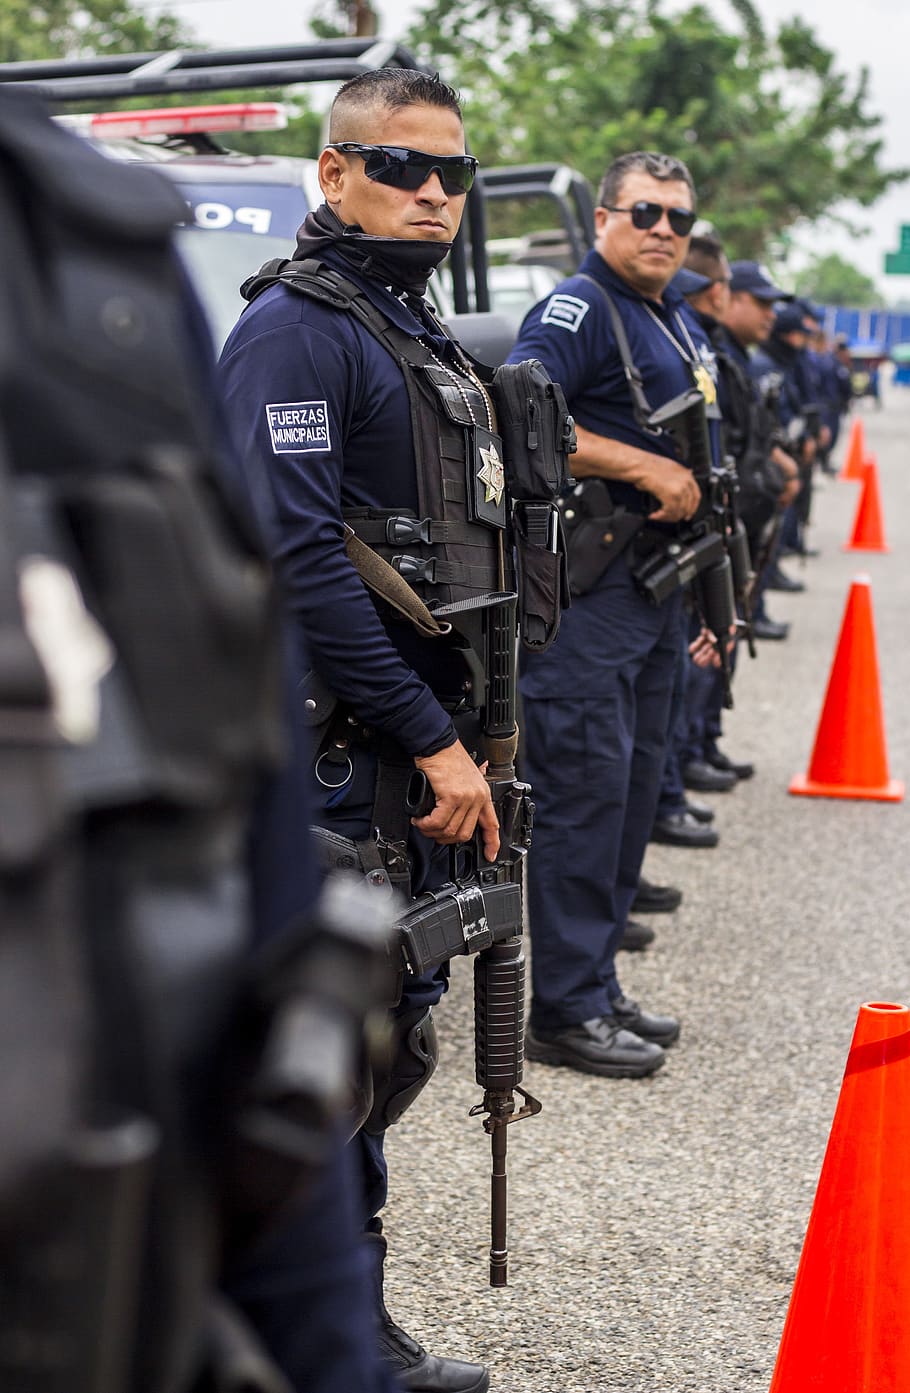 Grupo de oficiales de la policía sosteniendo rifles de asalto junto a varias patrullas. | Foto: PxFuel